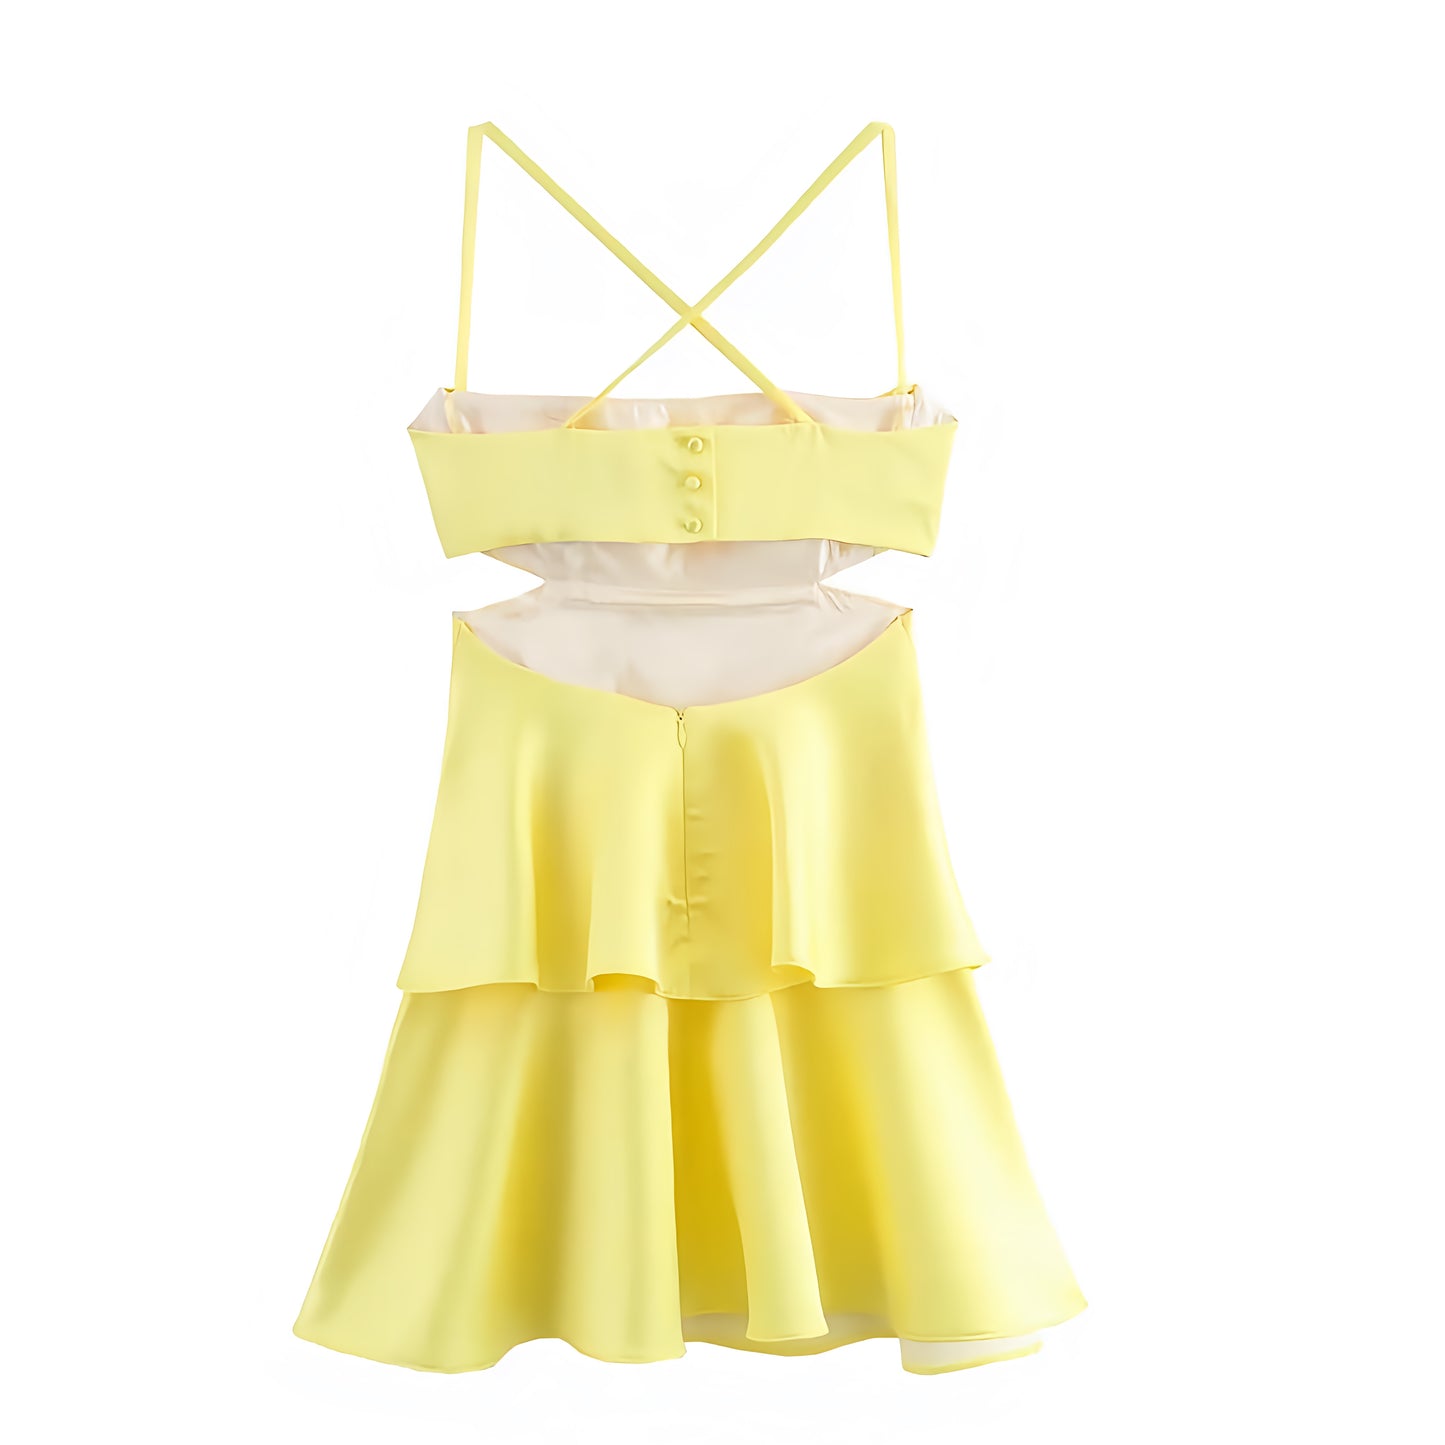 Yellow Tiered Ruffle Drop Waist Spaghetti Strap Backless Mini Dress